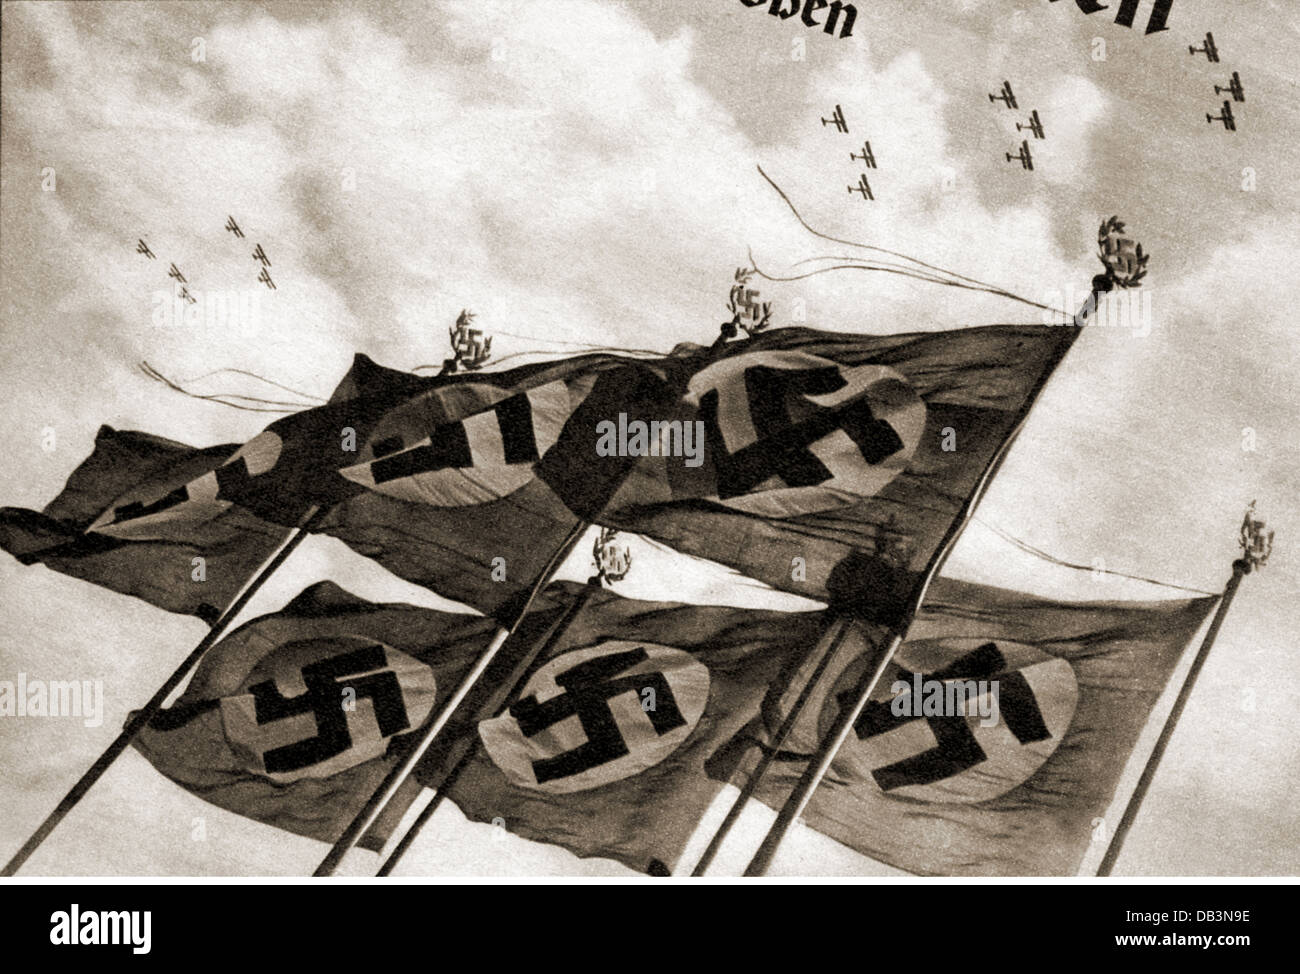 National-socialisme / nazisme, emblèmes, drapeaux de la croix gammée, illustration, d'un magazine, vers 1935, droits additionnels-Clearences-non disponible Banque D'Images